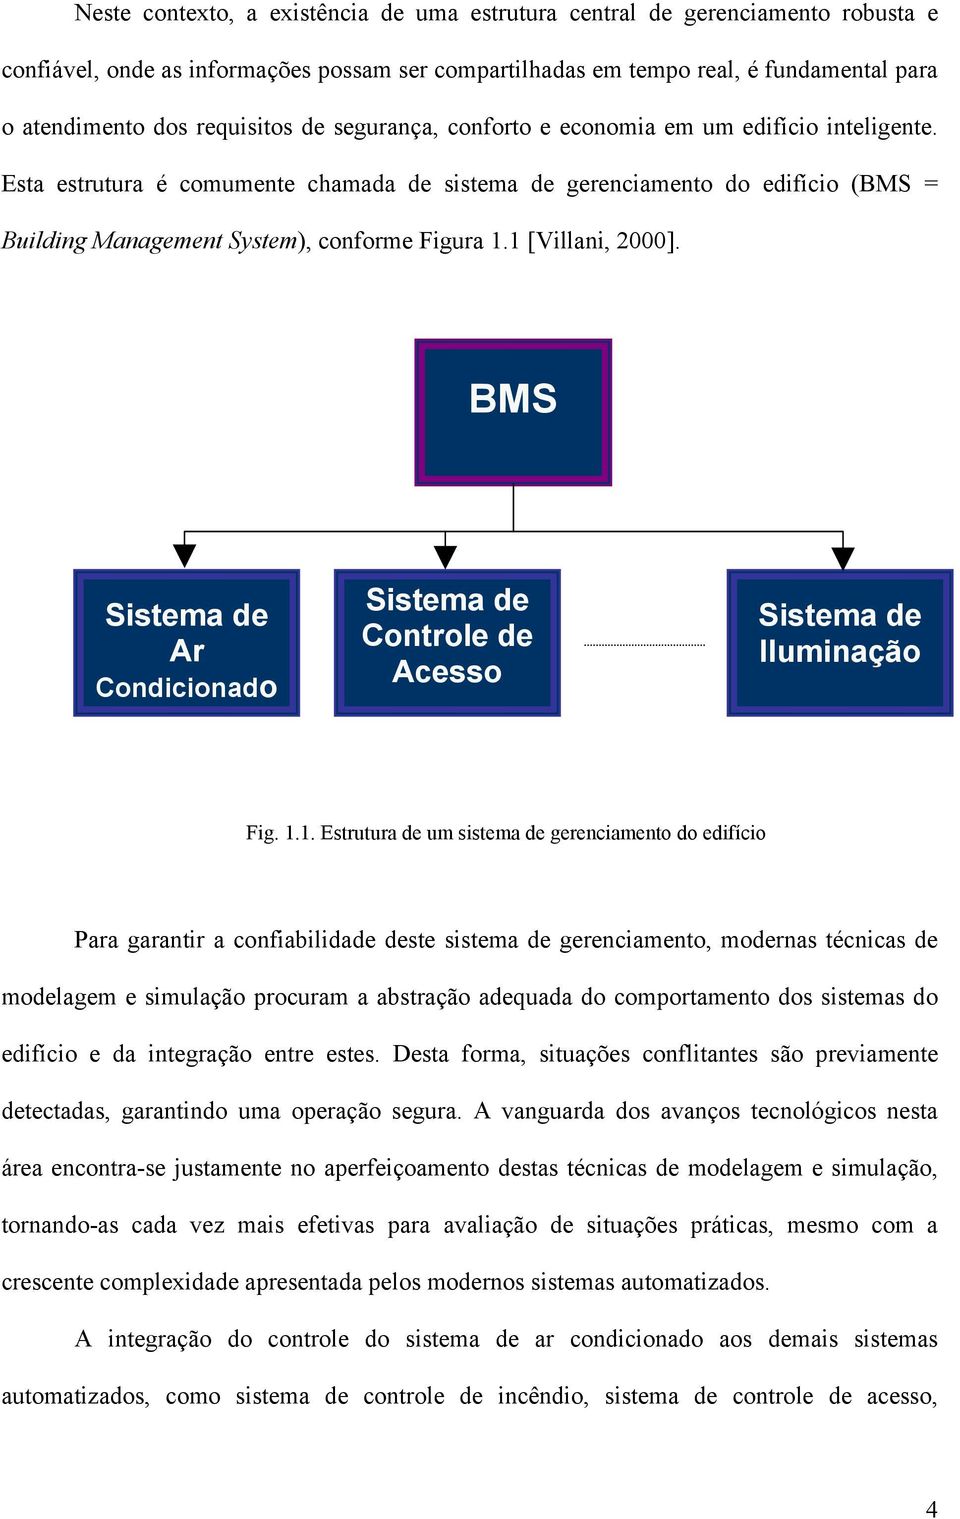 Esta estrutura é comumente chamada de sistema de gerenciamento do edifício (BMS = Building Management System), conforme Figura 1.1 [Villani, 2000].